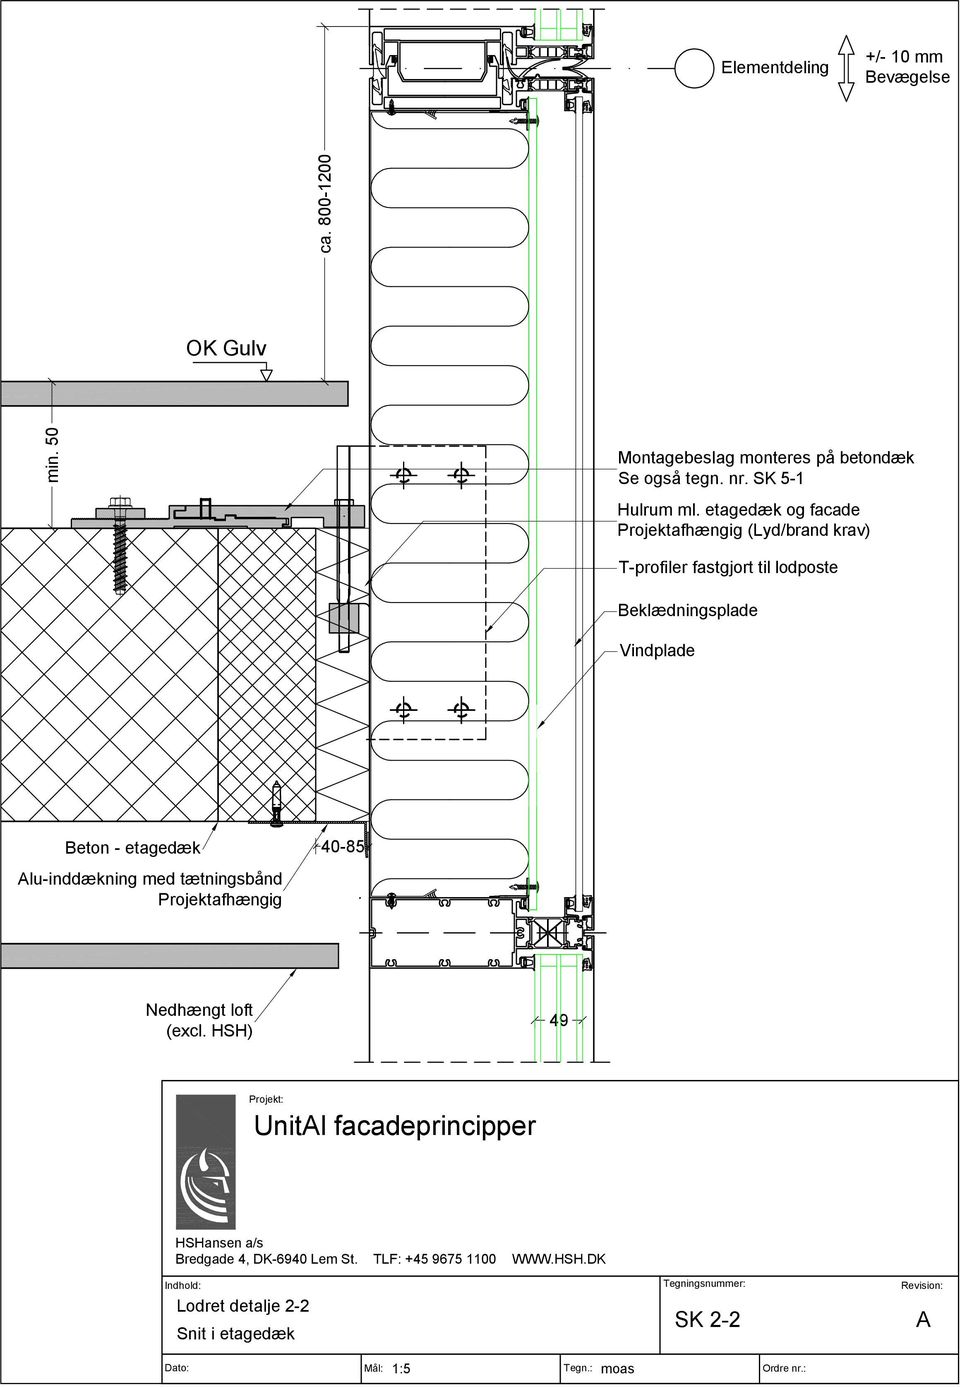 etagedæk og facade Projektafhængig (Lyd/brand krav) T-profiler fastgjort til lodposte Beklædningsplade